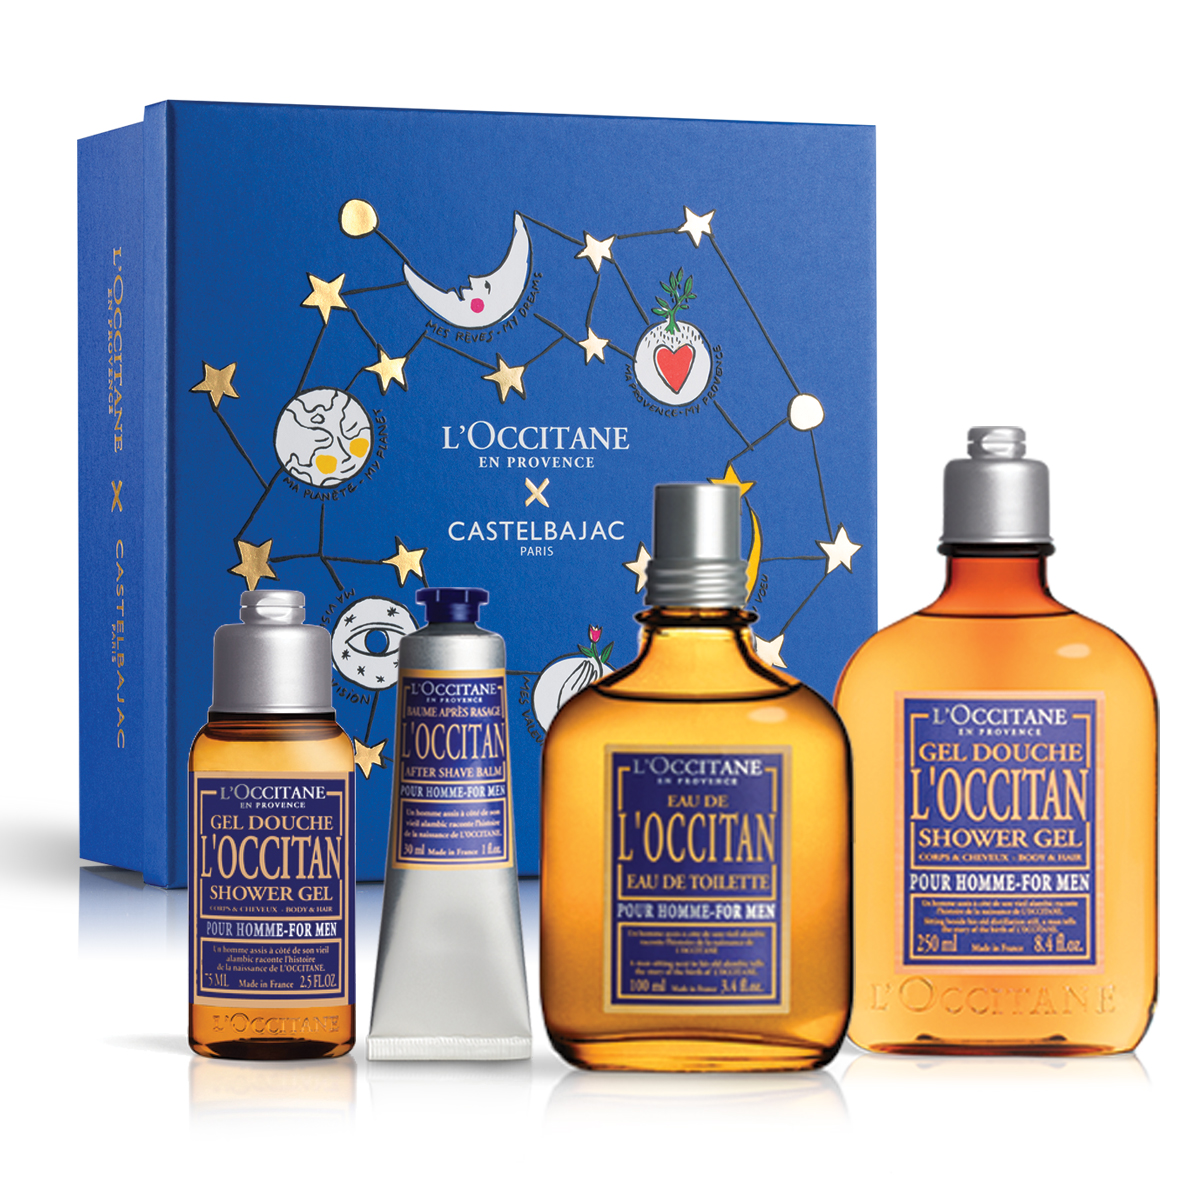 Aromatic L'Occitan Collection €69 worth €87.50